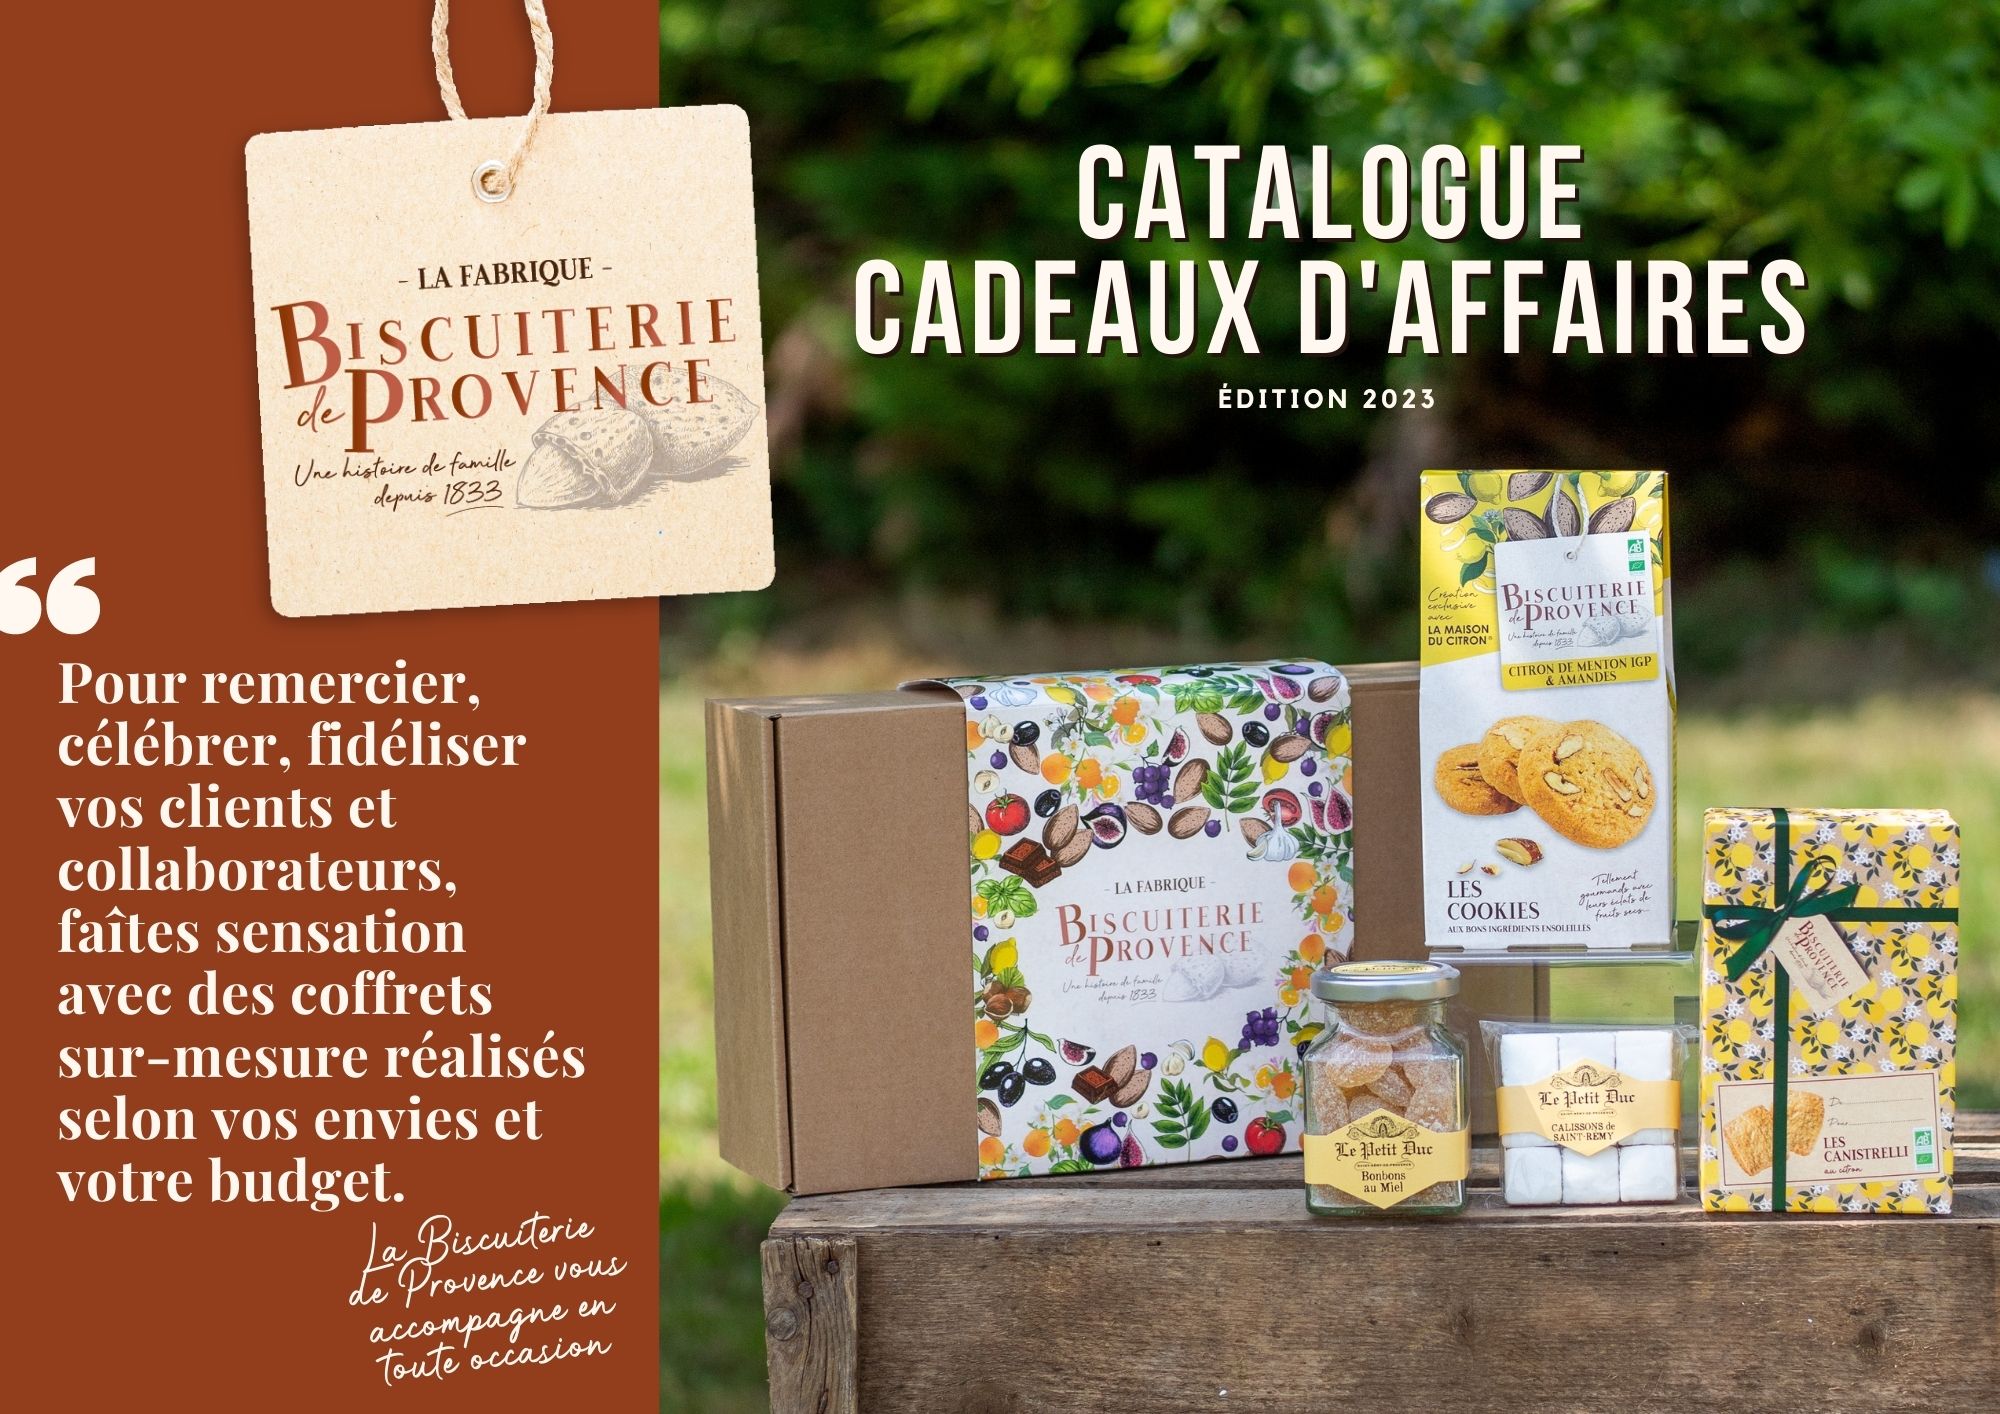 Catalogue cadeaux d'affaires Biscuiterie de Provence pour tous les budgets